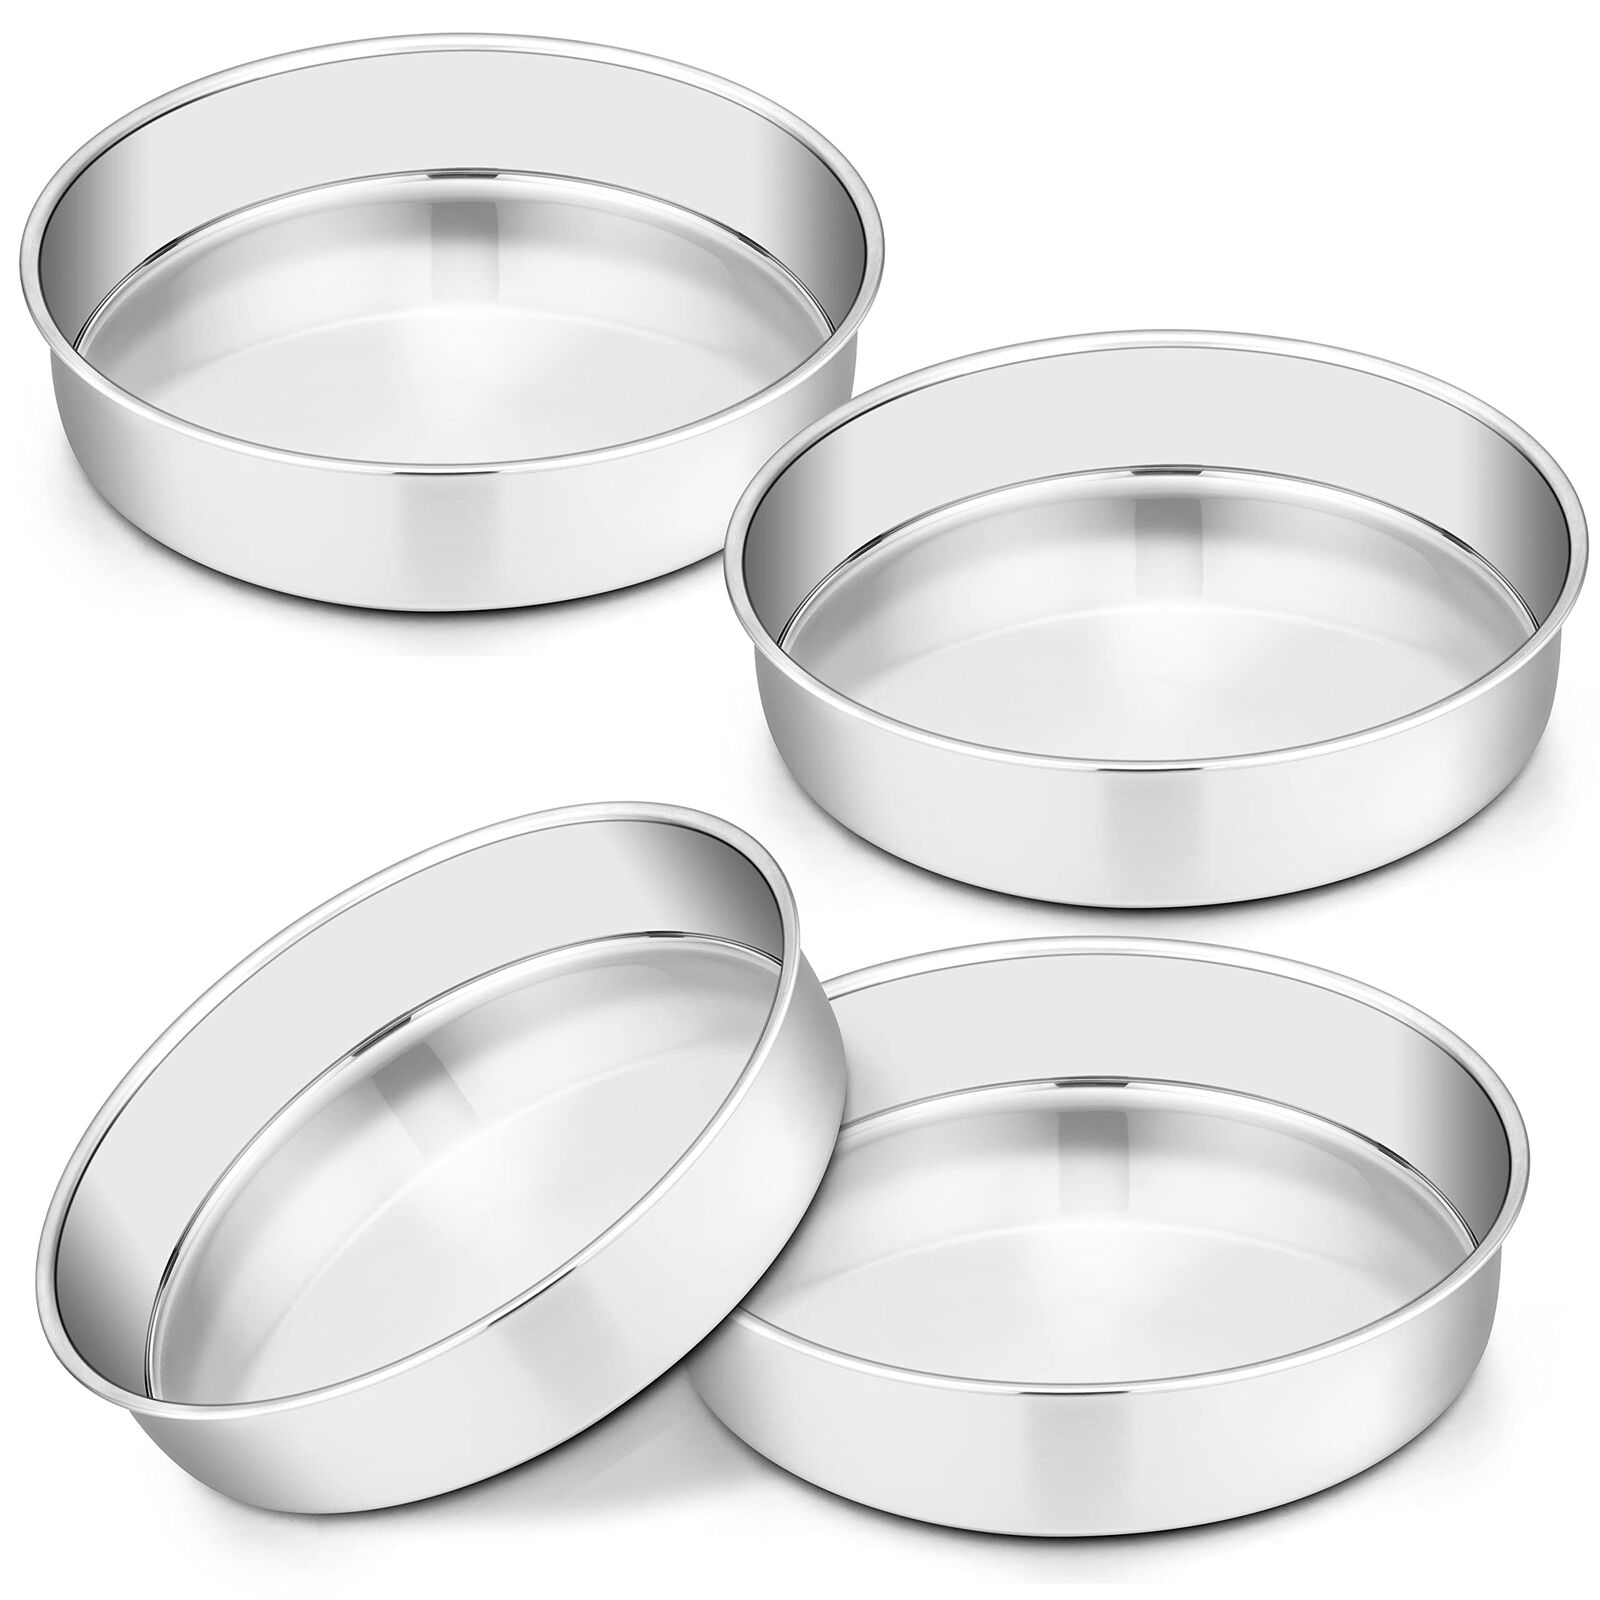 9½ Inch Cake Pan Set of 4, Stainless Steel Round Smash Cake Pans for Baking B...